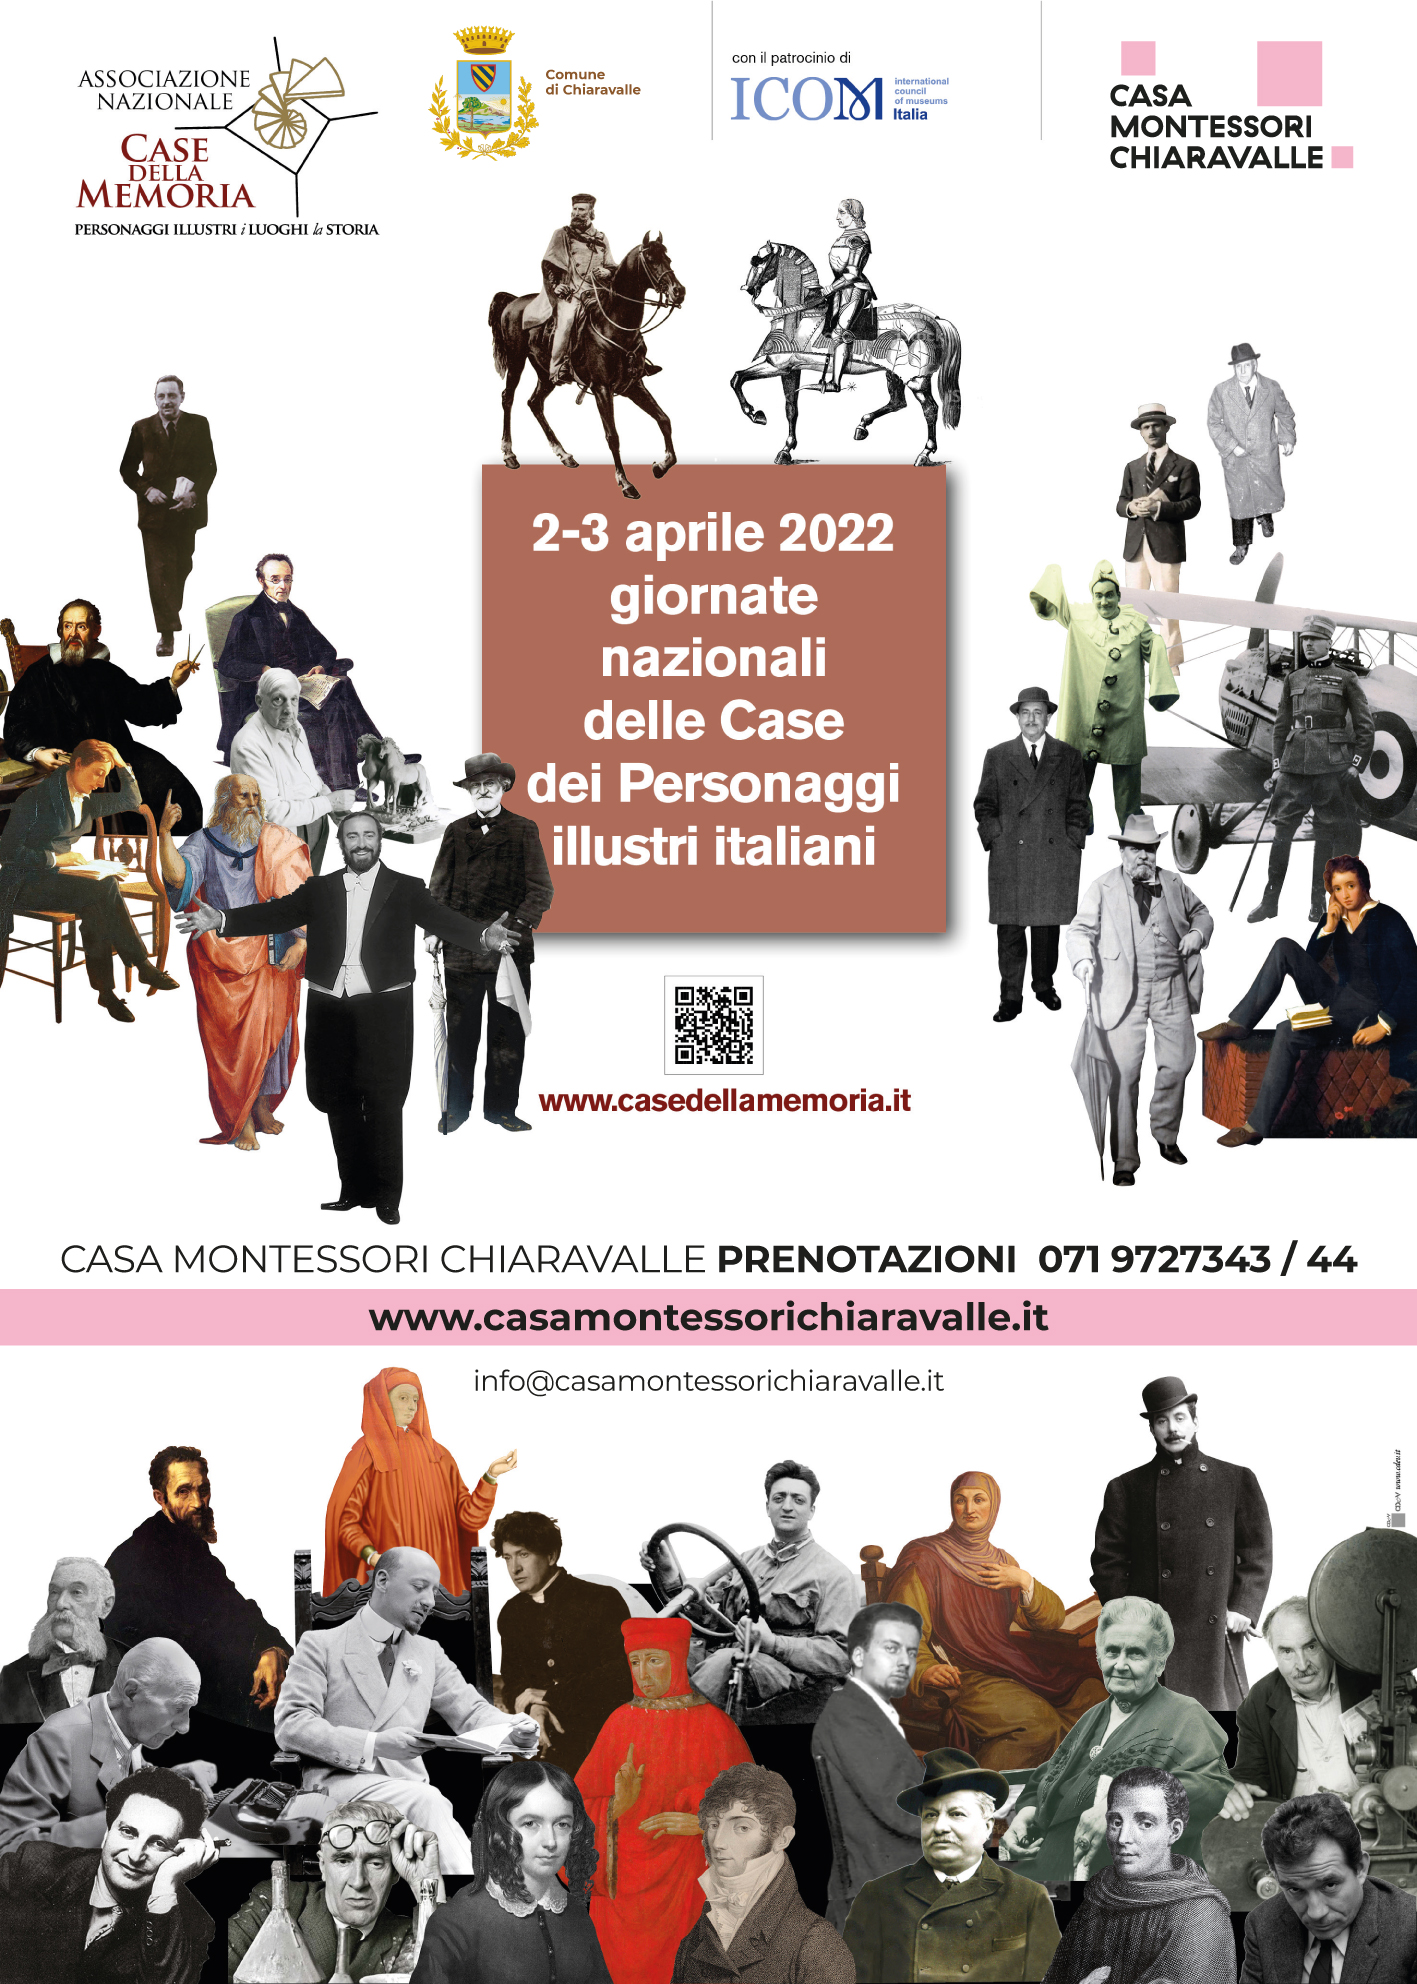 Giornata nazionale delle case dei personaggi illustri italiani (2-3 aprile)